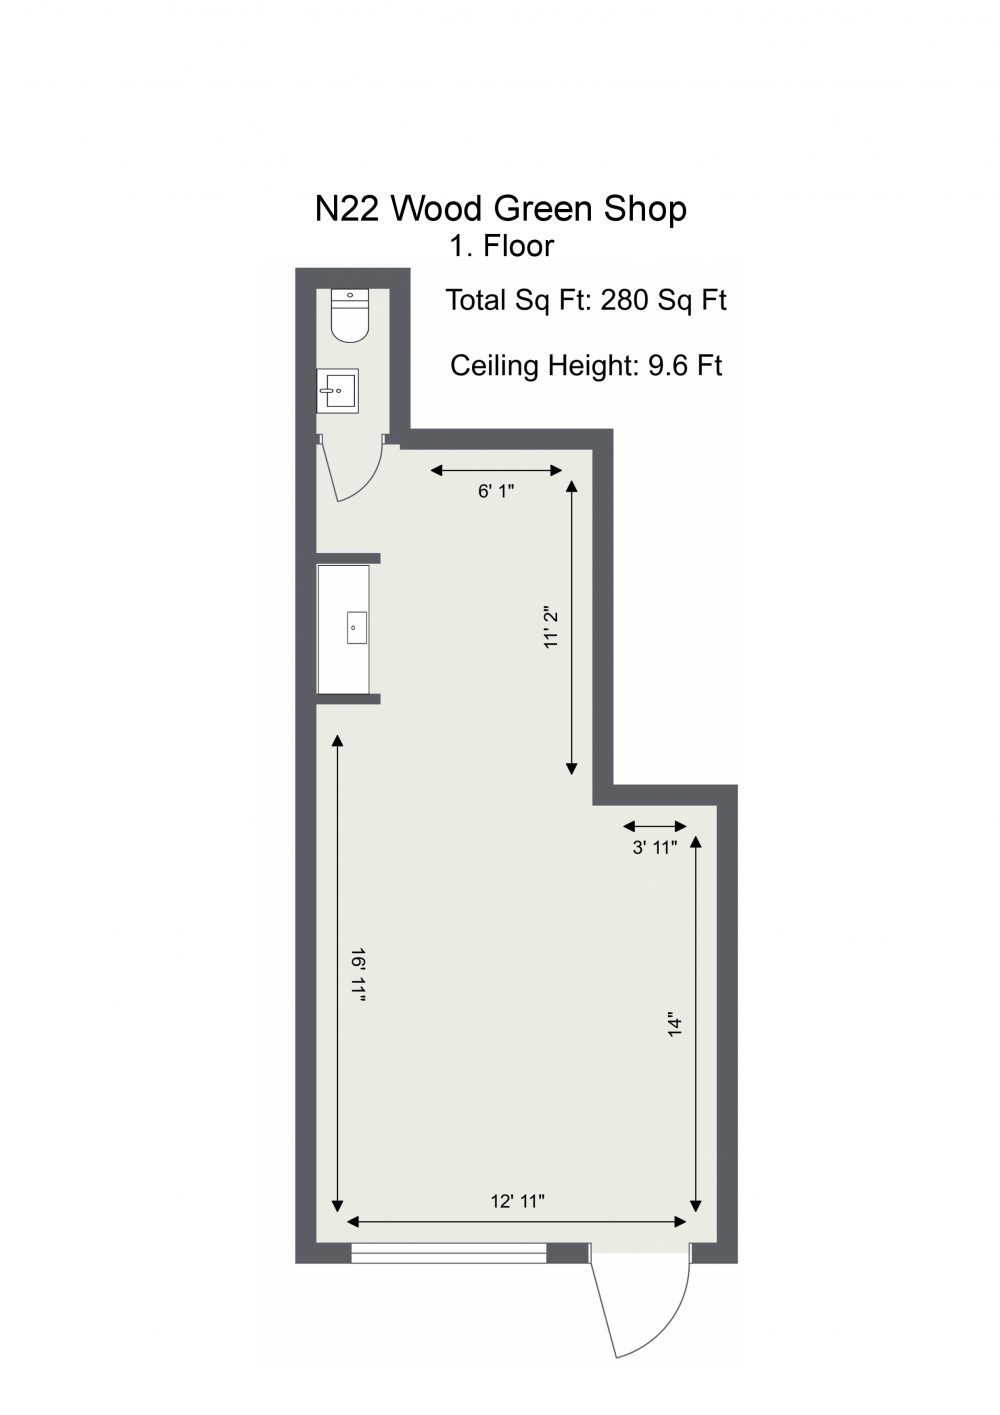 N22 Wood Green Shop – Floor Plan